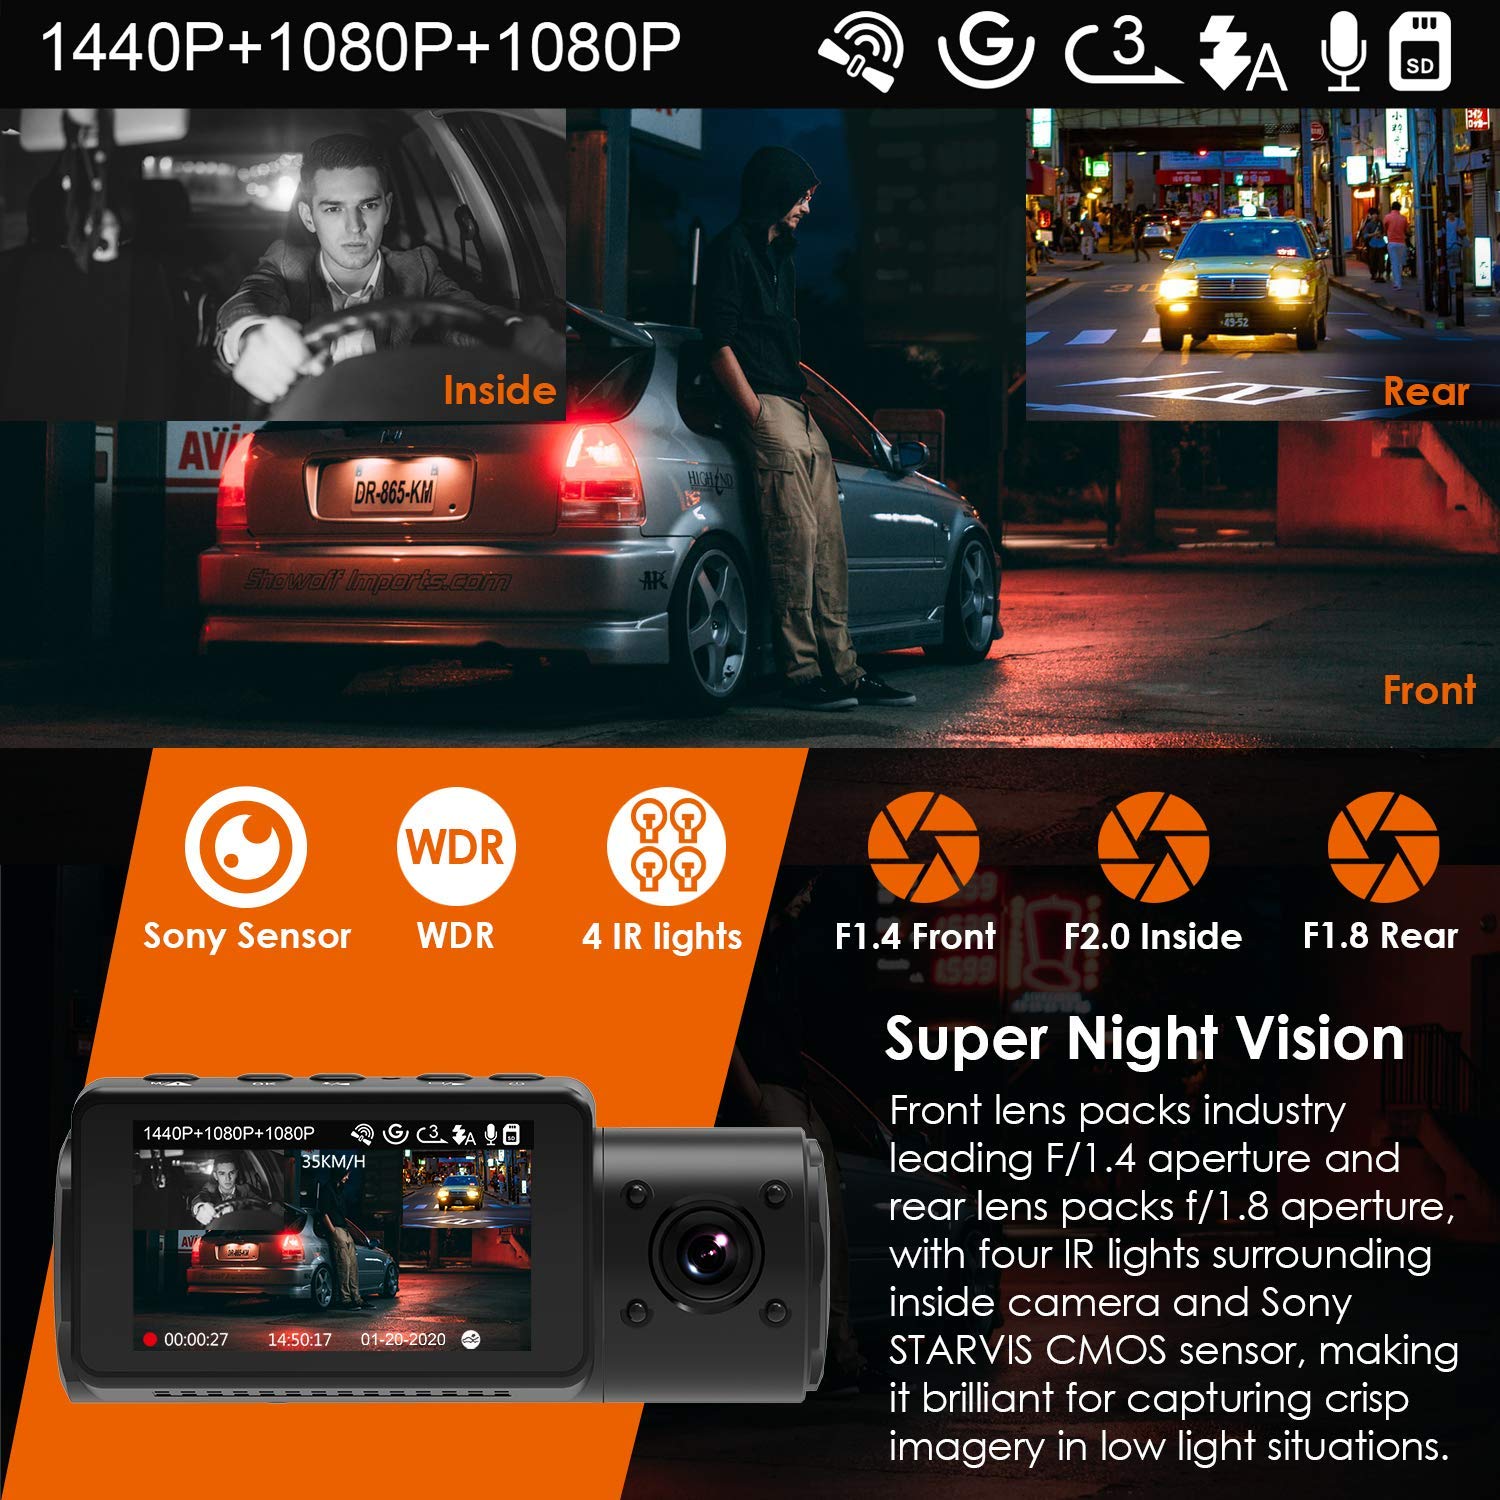 Vantrue N4 Pro 3 Channel 4K WiFi Dash Cam